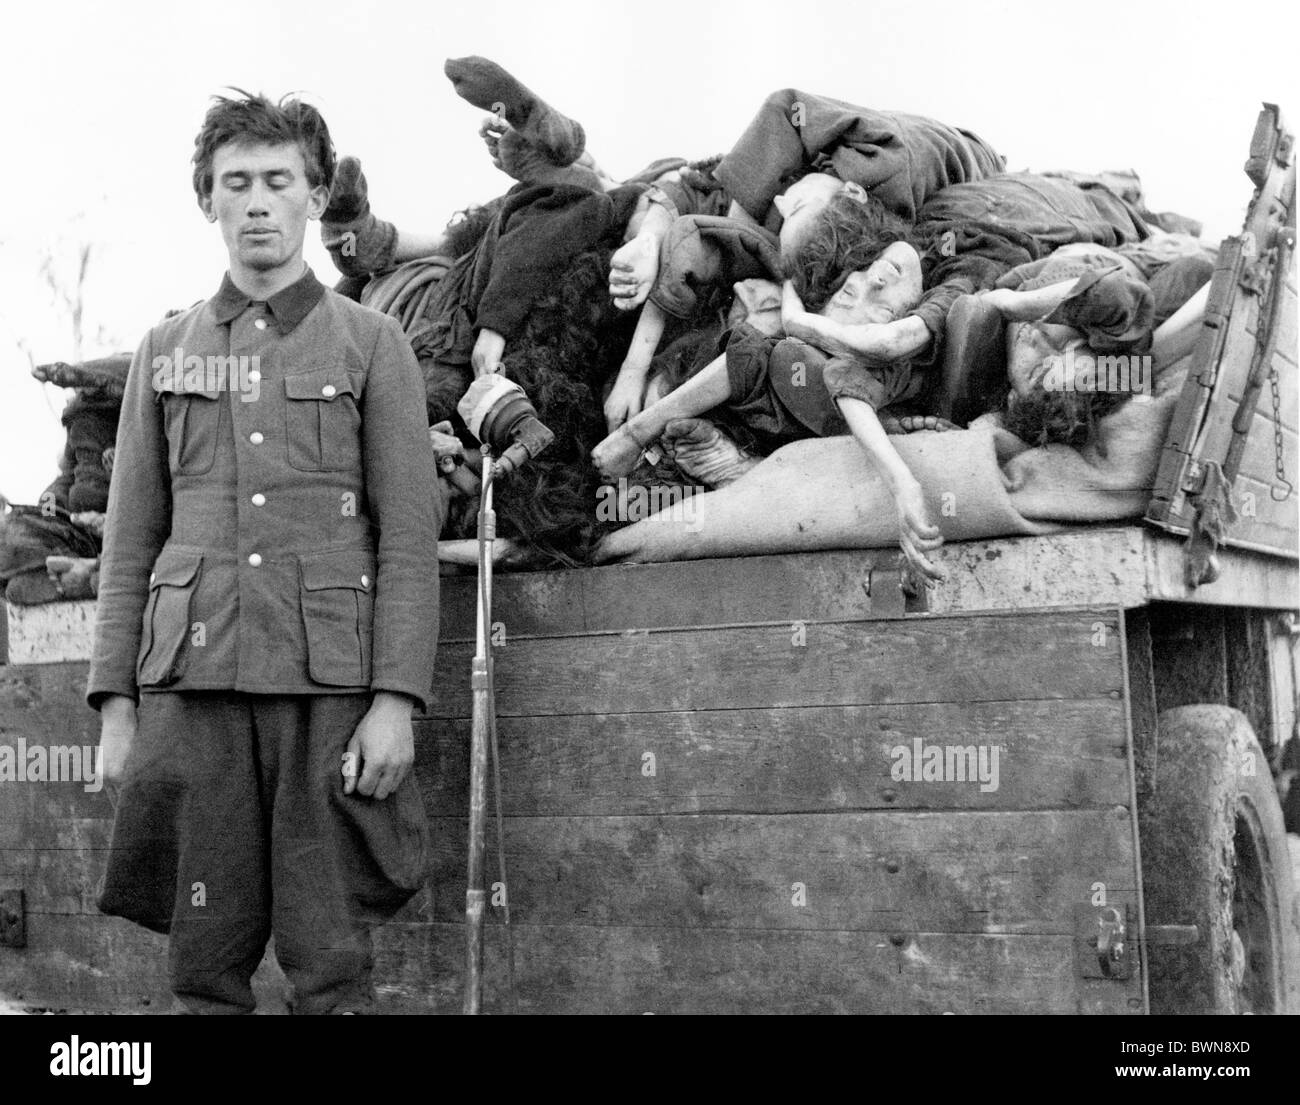 La Seconde Guerre mondiale, camp de concentration de Bergen-Belsen Allemagne Europe Avril 1945 Historique Historique L'histoire des prisonniers Banque D'Images